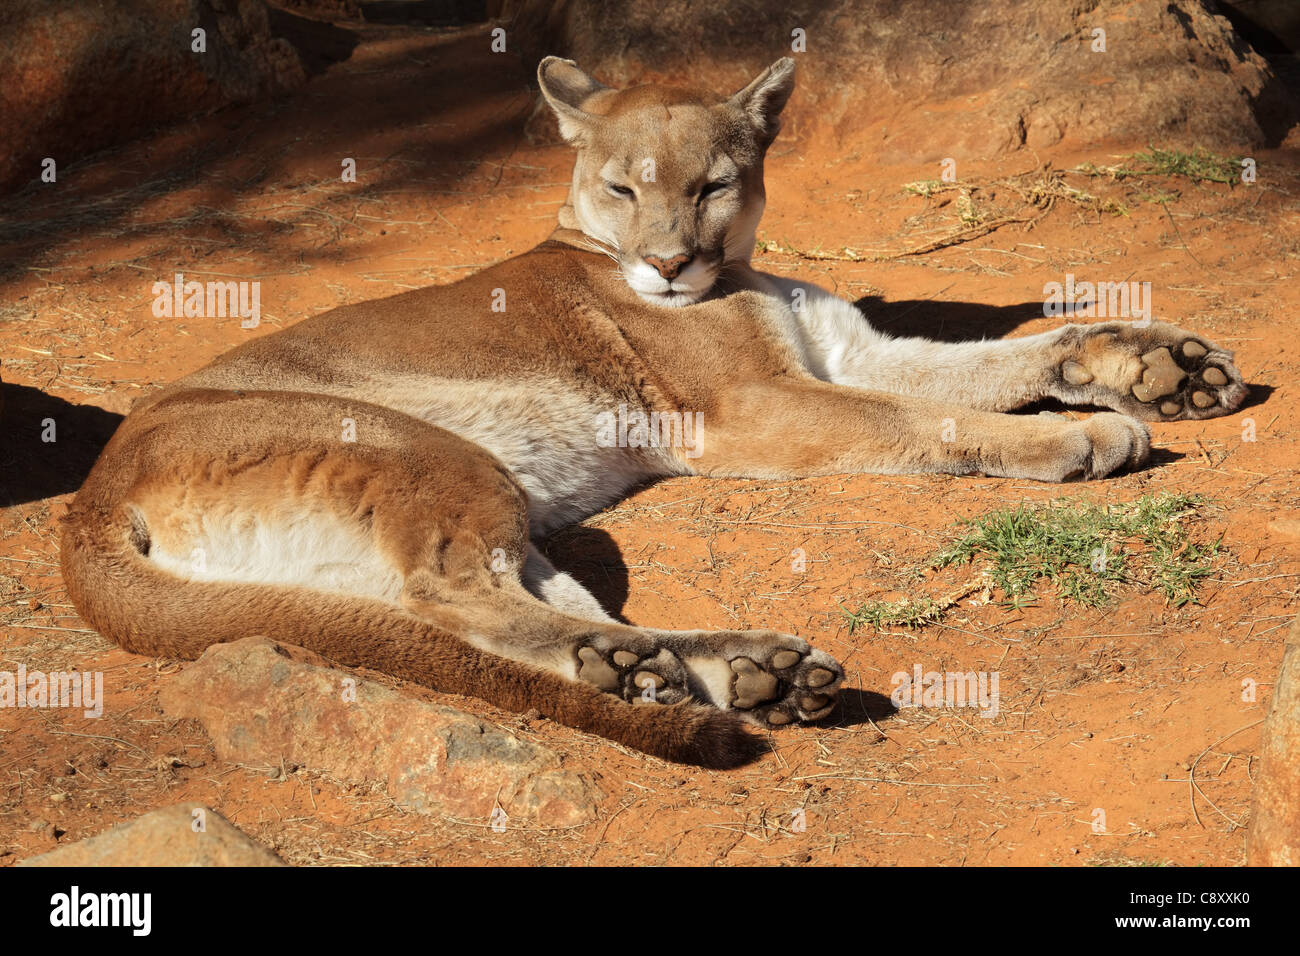 Un puma (Puma concolor), también conocido como el puma, el león de montaña  o pantera descansando en el suelo Fotografía de stock - Alamy